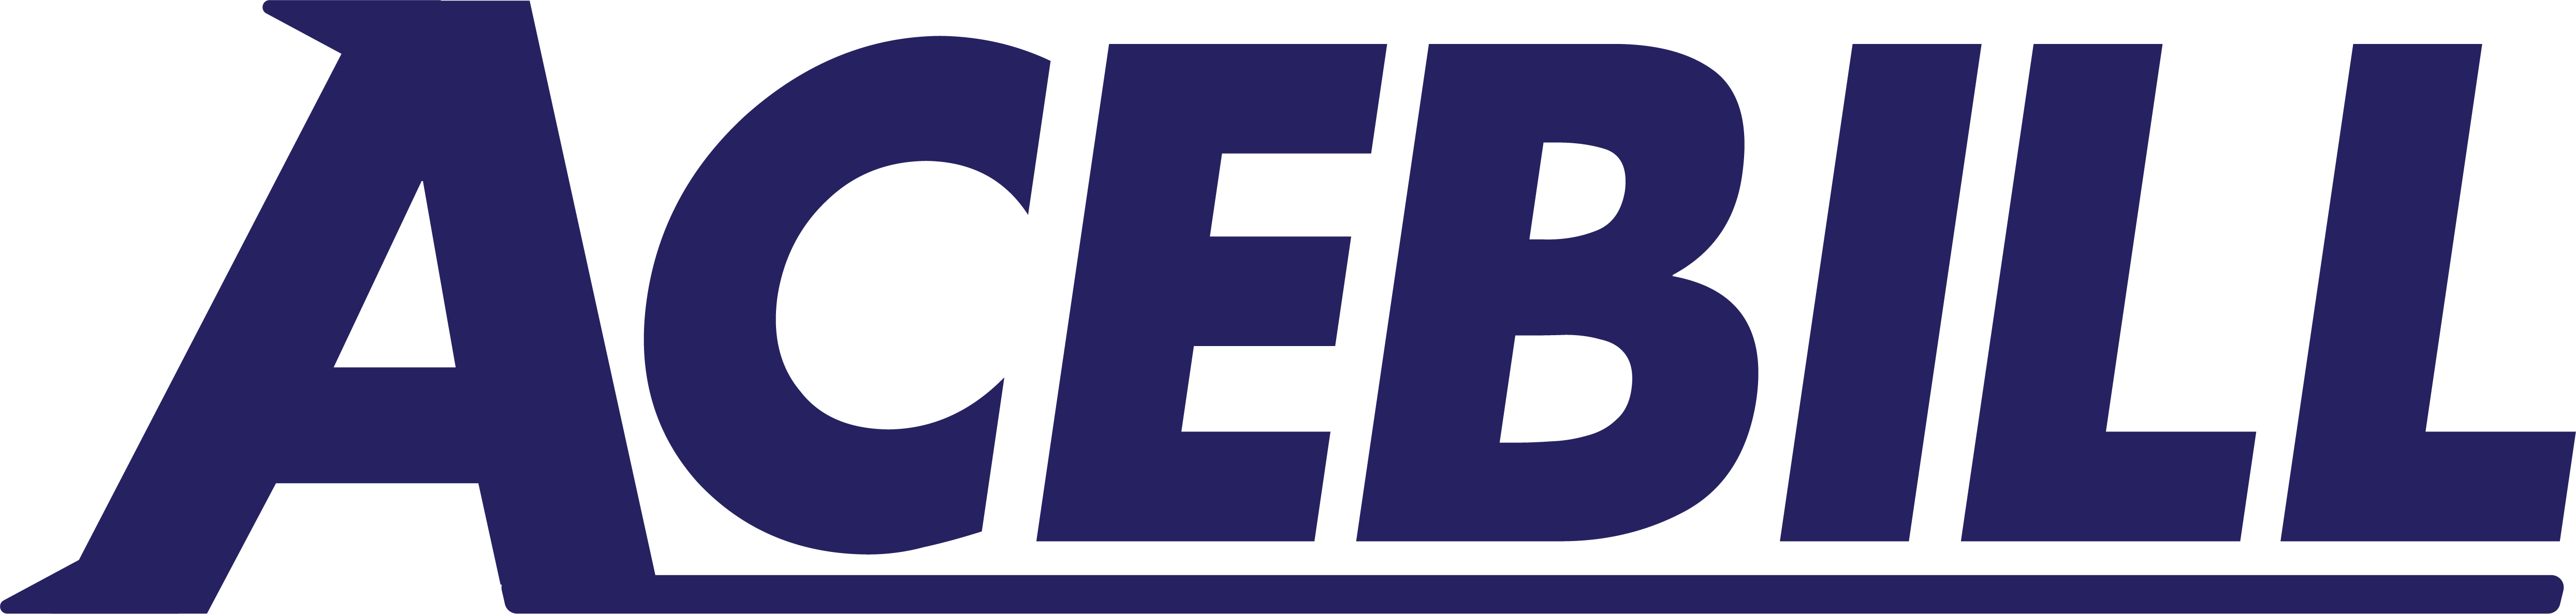 acebill logo